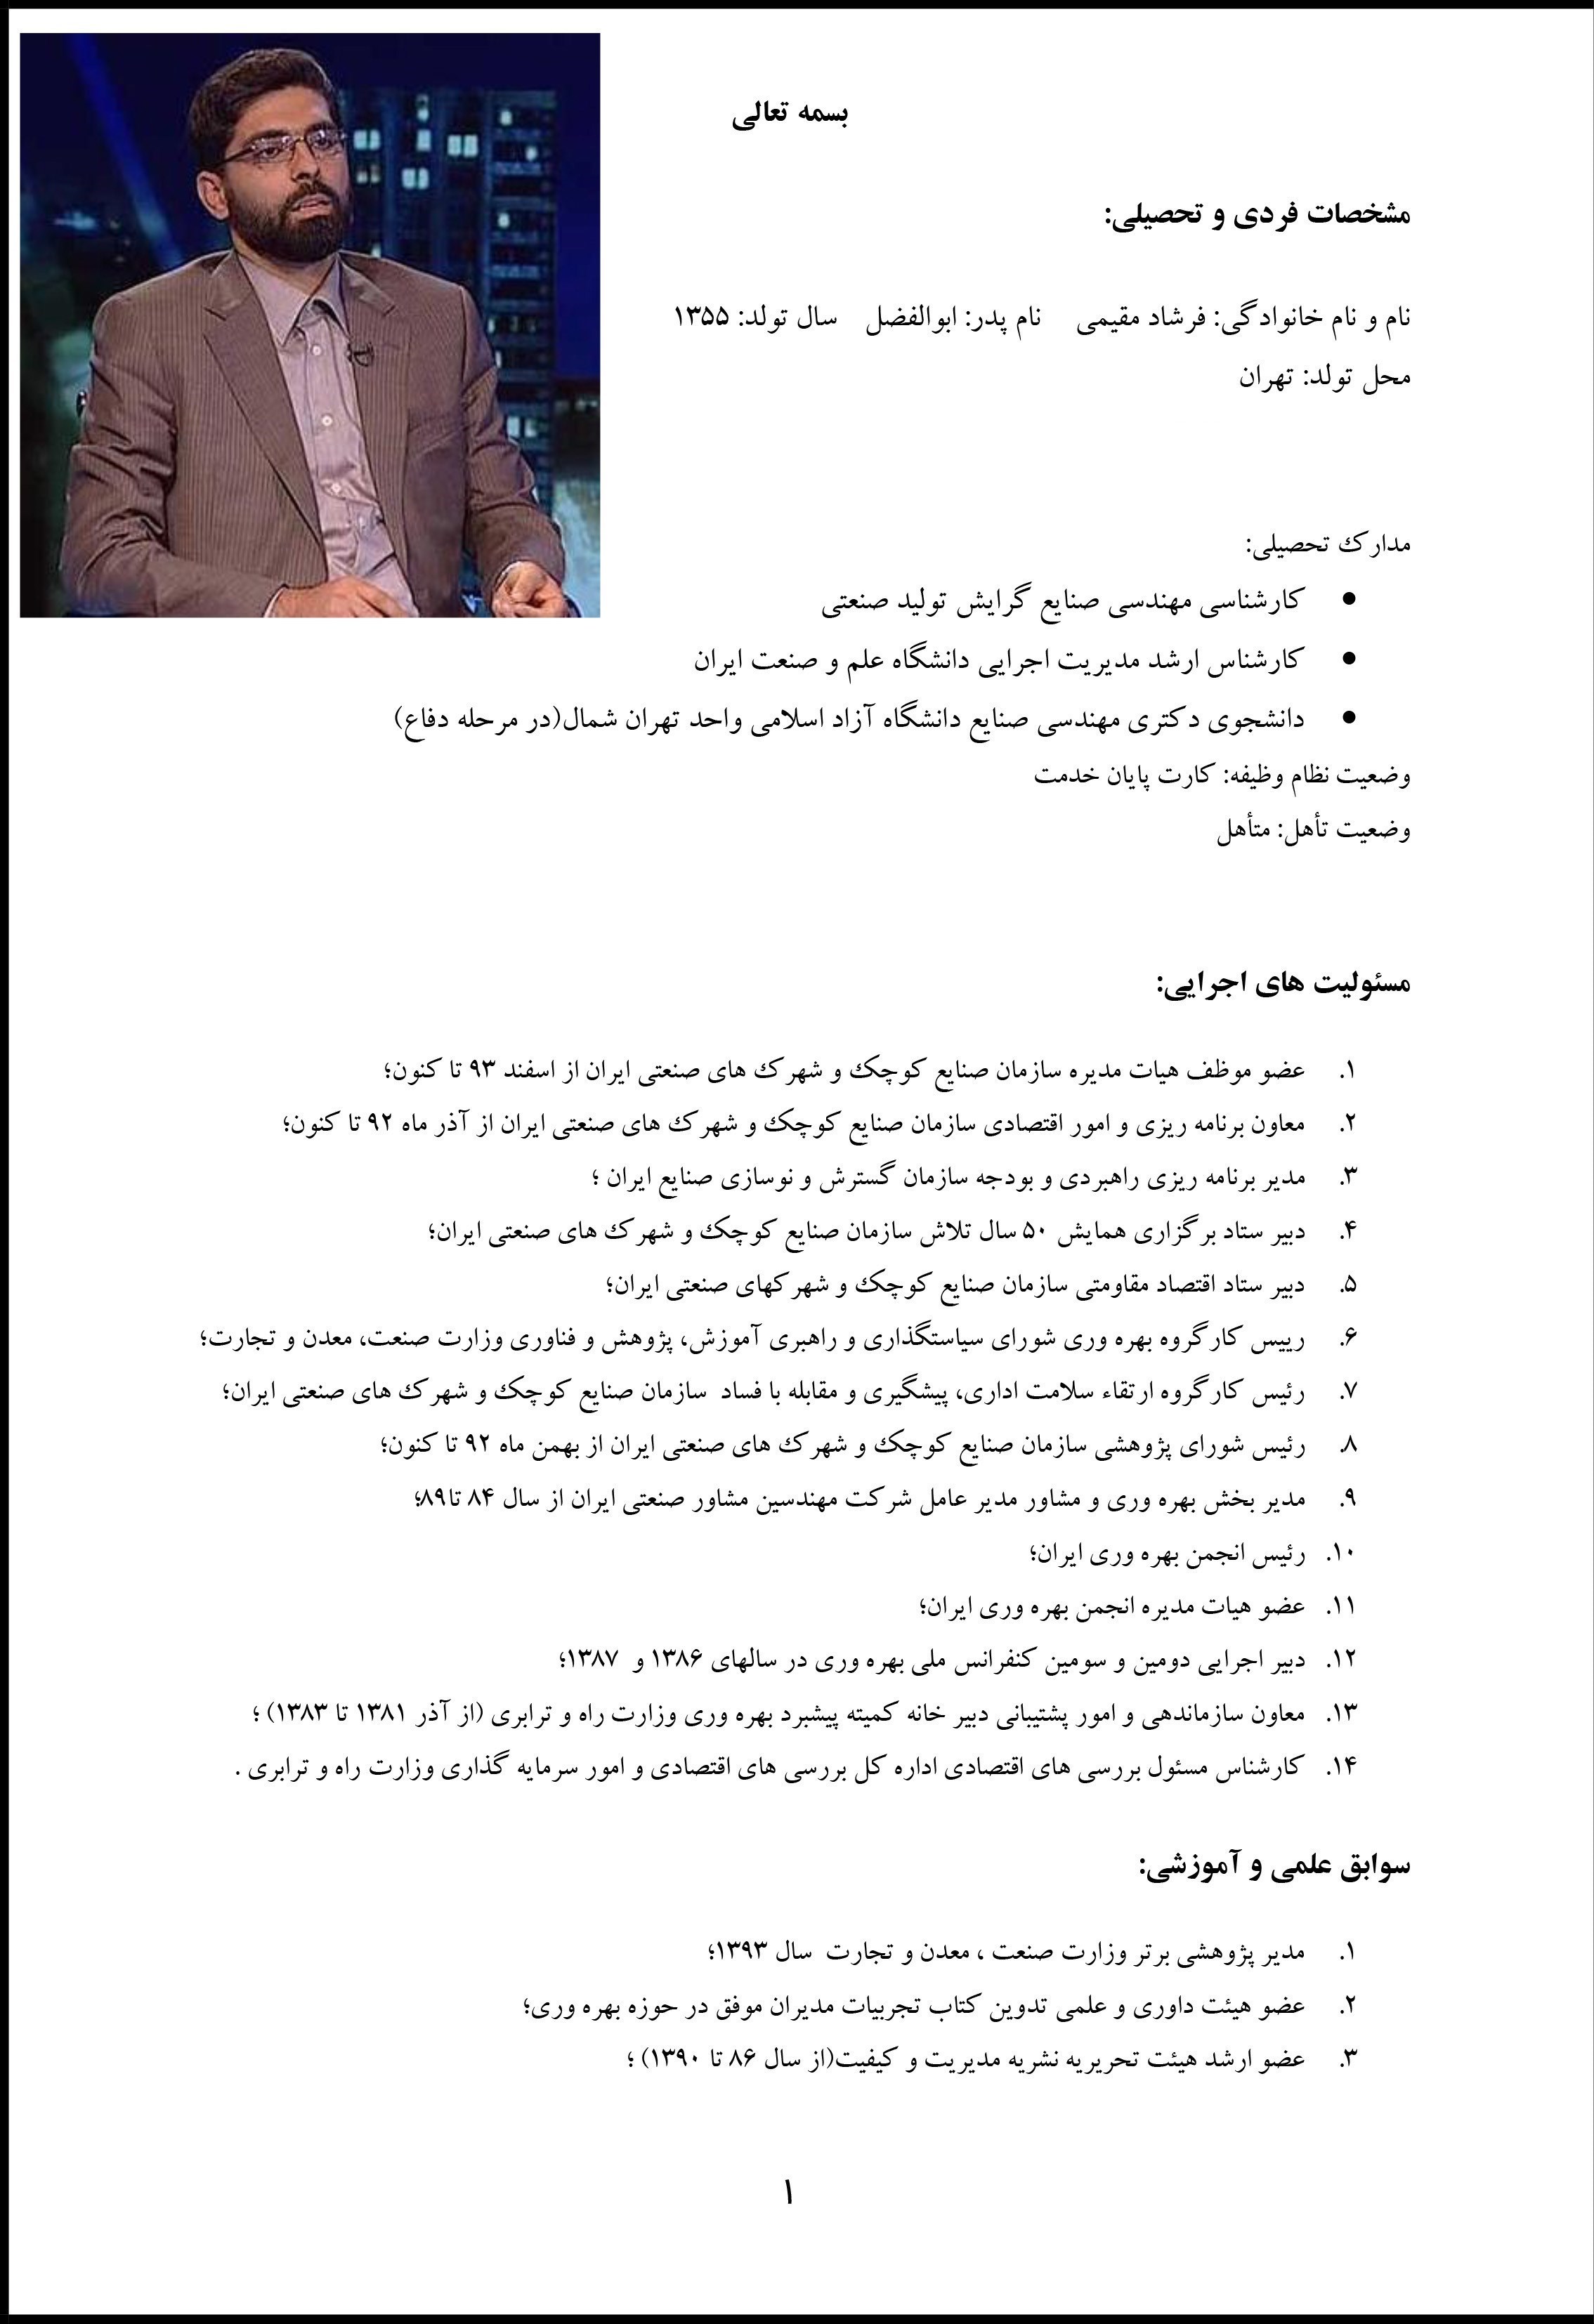 رزومه فرشاد مقیمی مدیر عامل جدید ایران خودرو